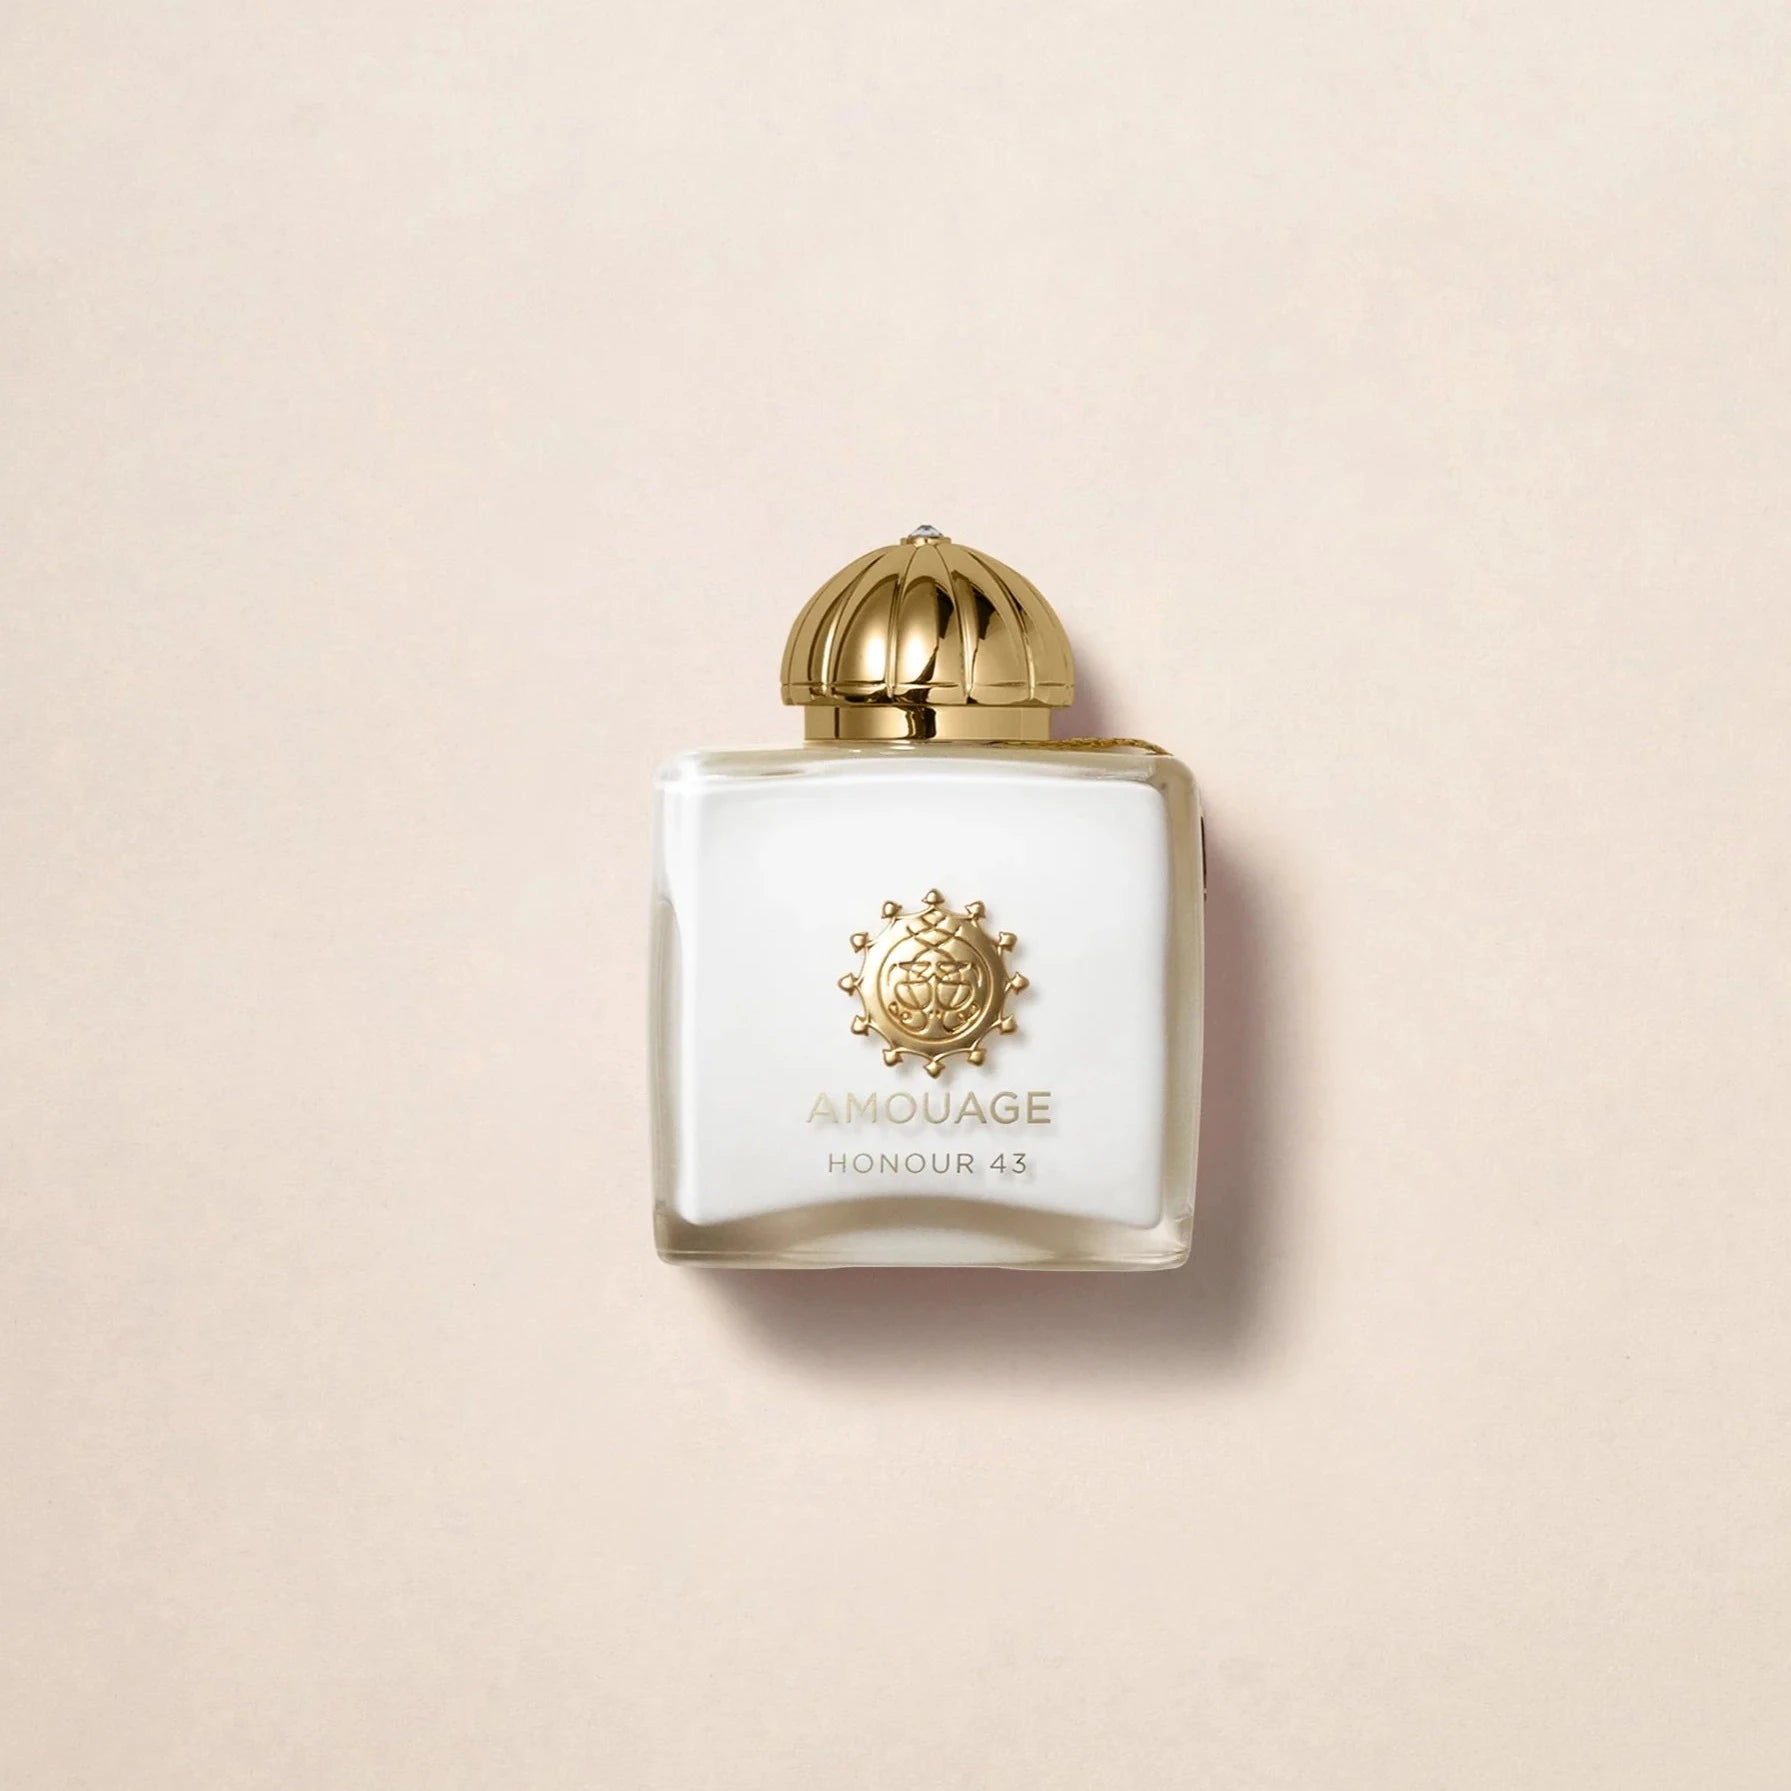 Amouage Honour 43 Extrait De Parfum | My Perfume Shop Australia